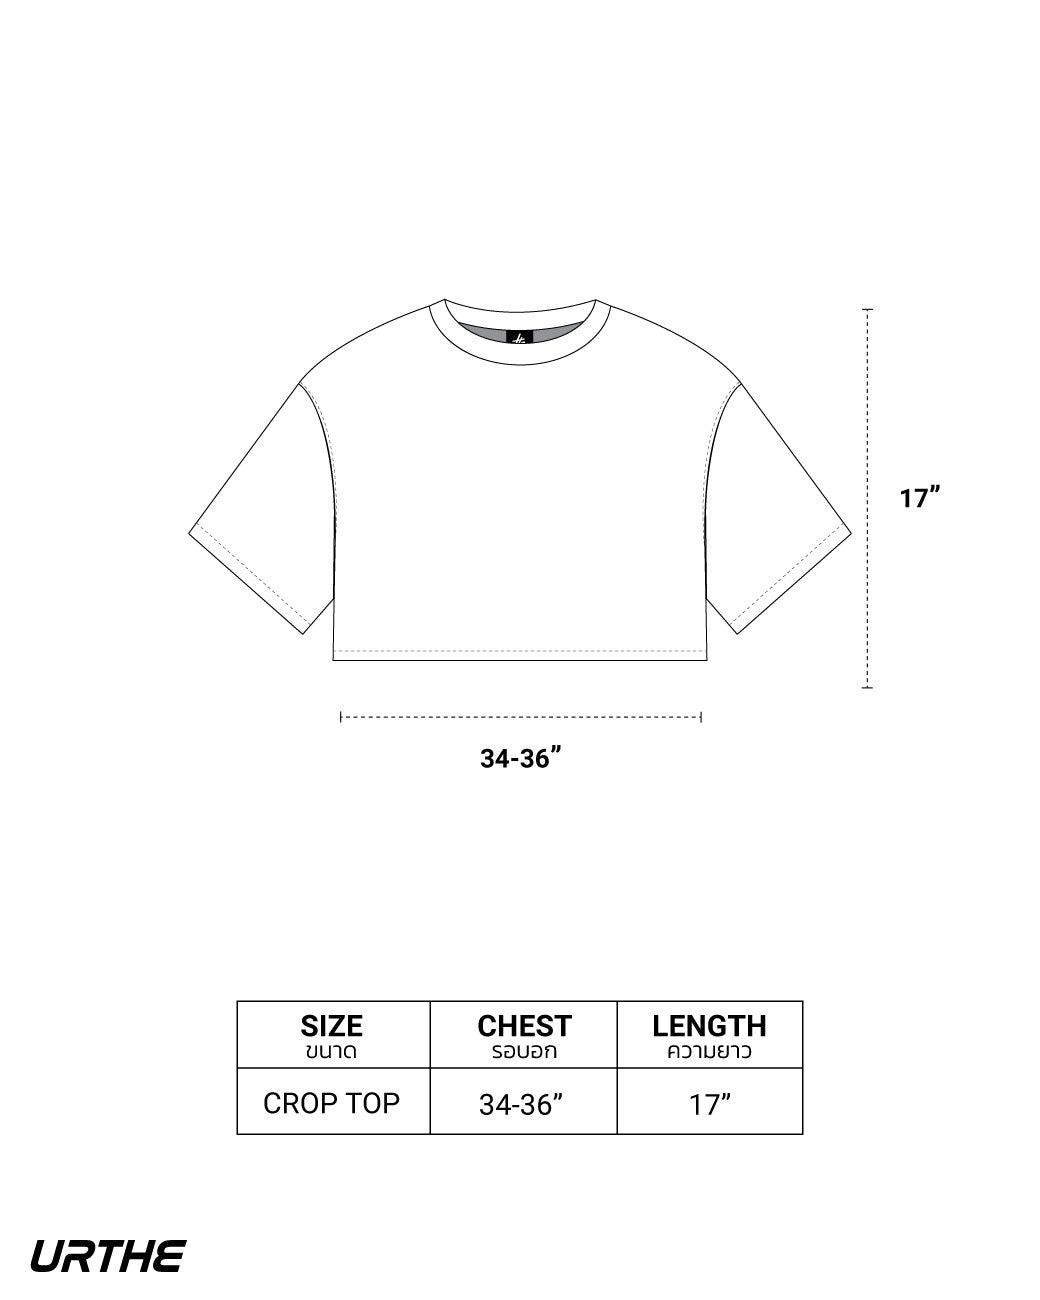 URTHE - เสื้อยืด เเขนสั้น ผ้าฟอก รุ่น MN CURV BOY / GIRL